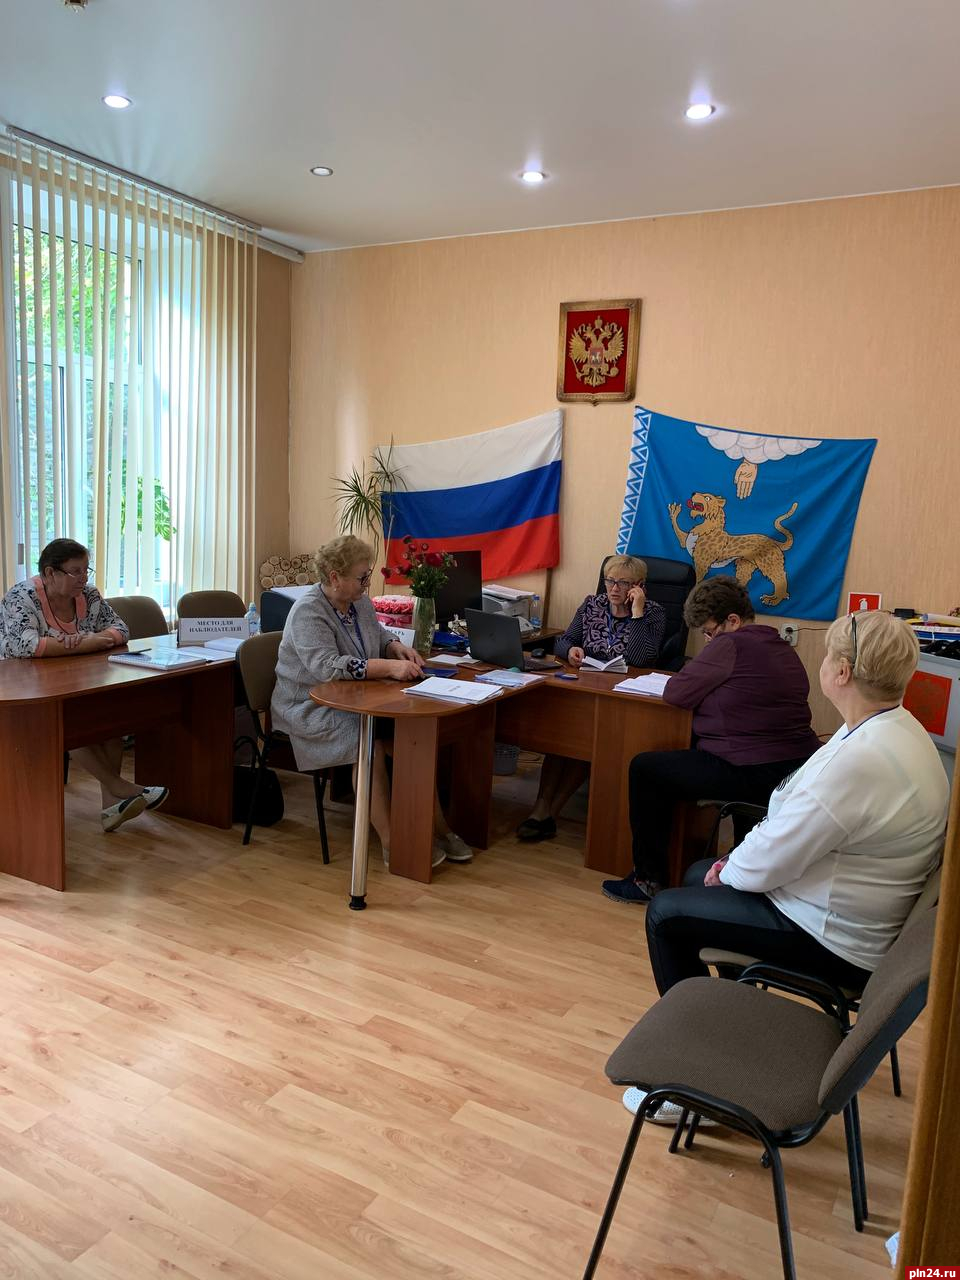 Явка на муниципальных выборах в Стругокрасненском районе приближается к 38%